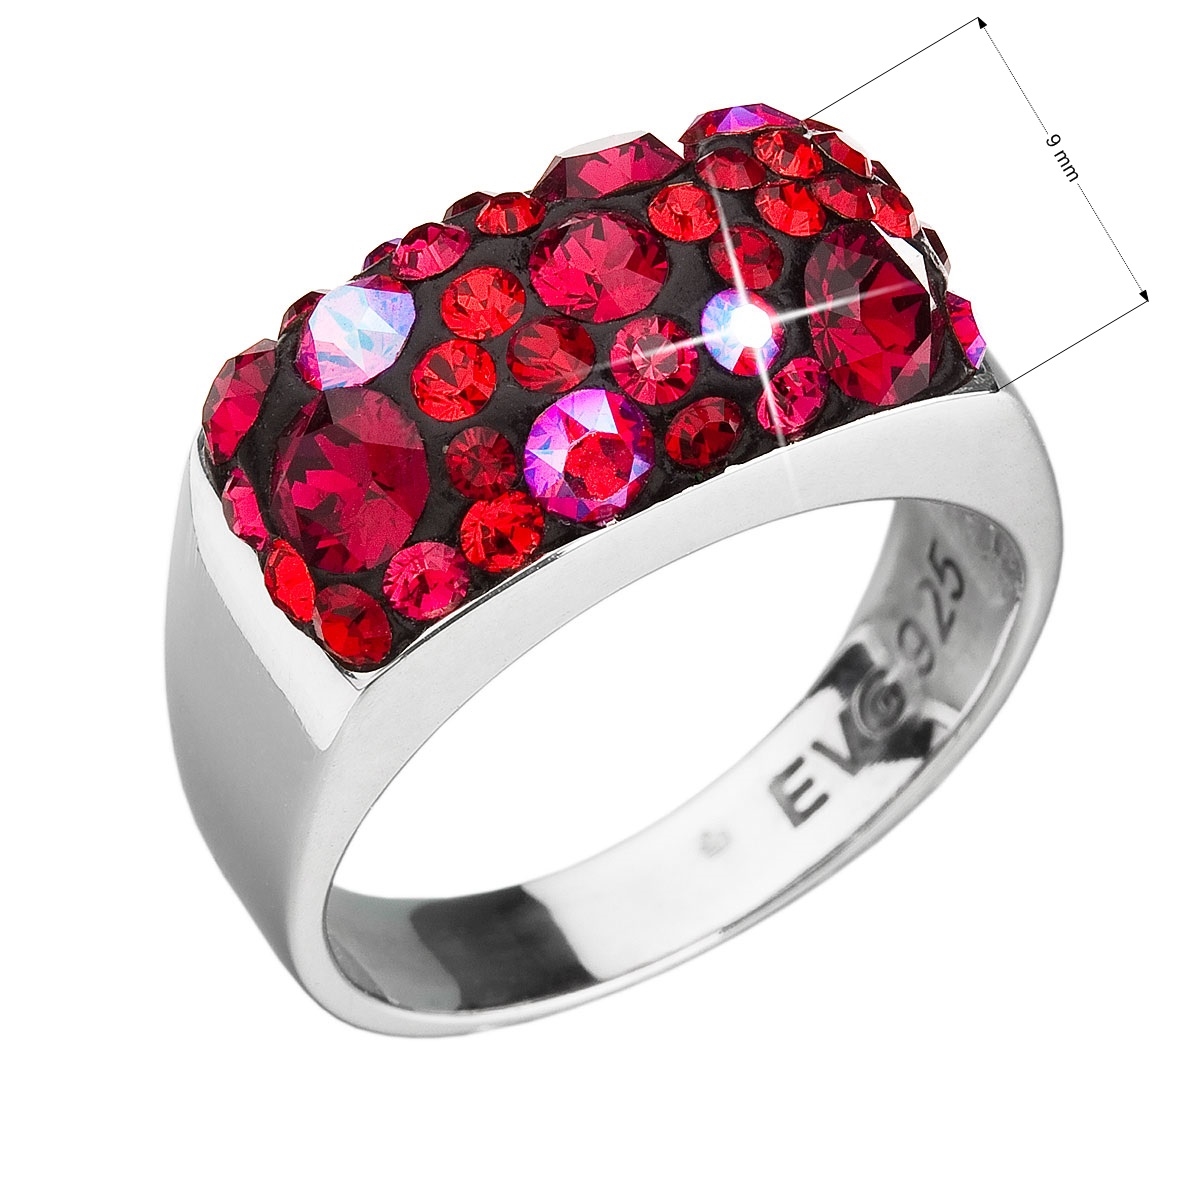 Strieborný prsteň s kameňmi Crystals from Swarovski ® Cherry